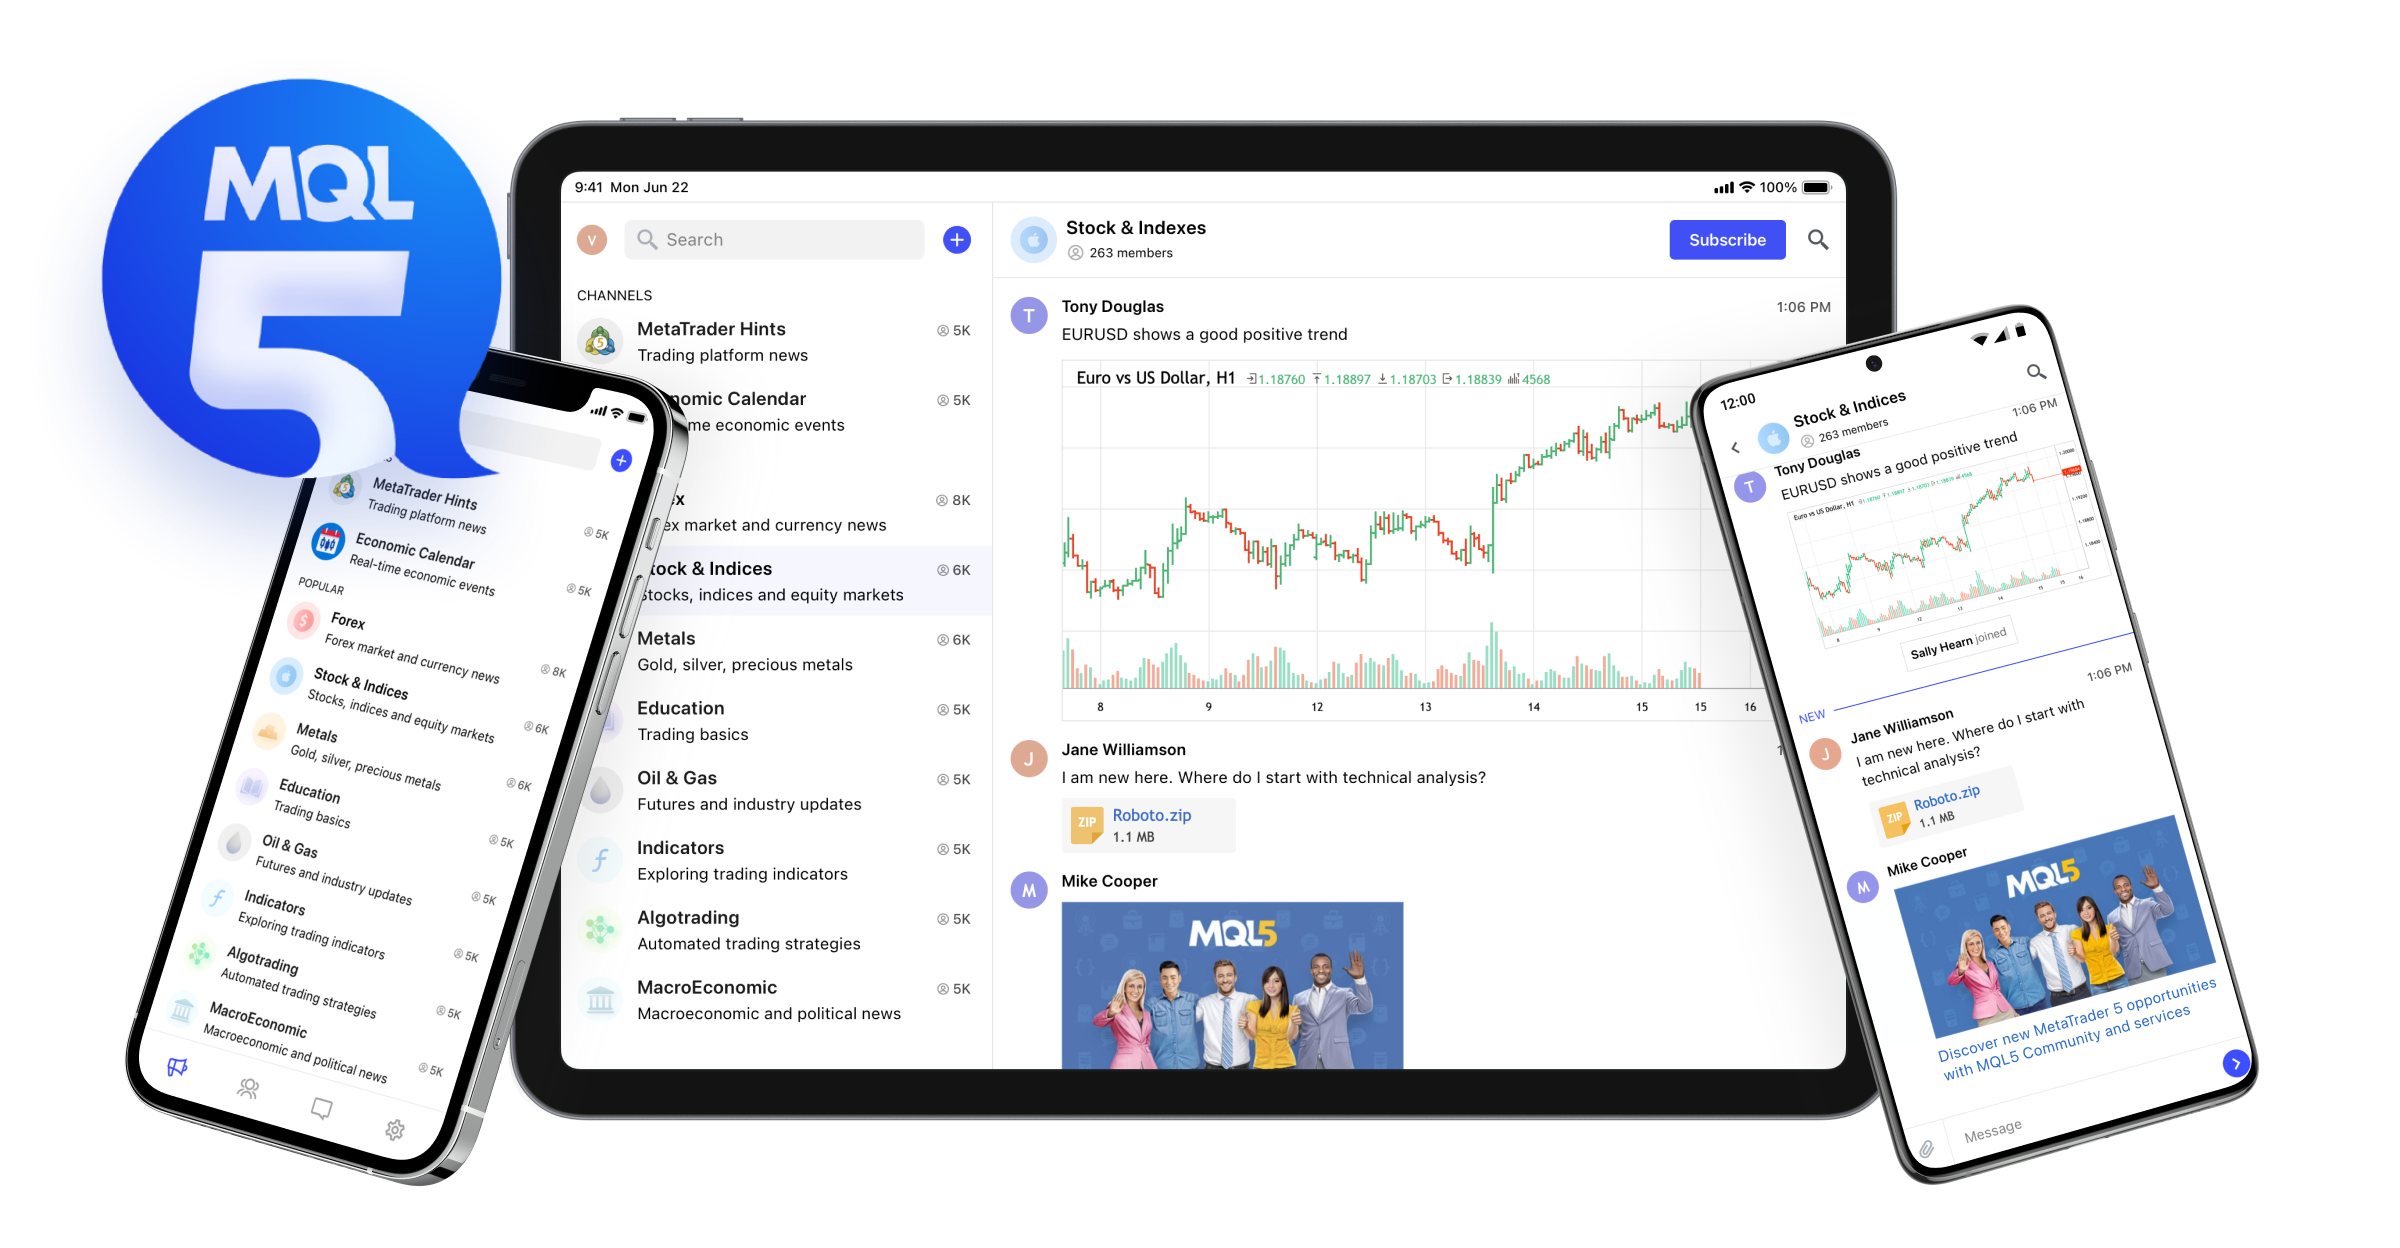 MetaQuotes hat für Händler eine Messaging-App mit Finanznachrichten und Analysetipps veröffentlicht